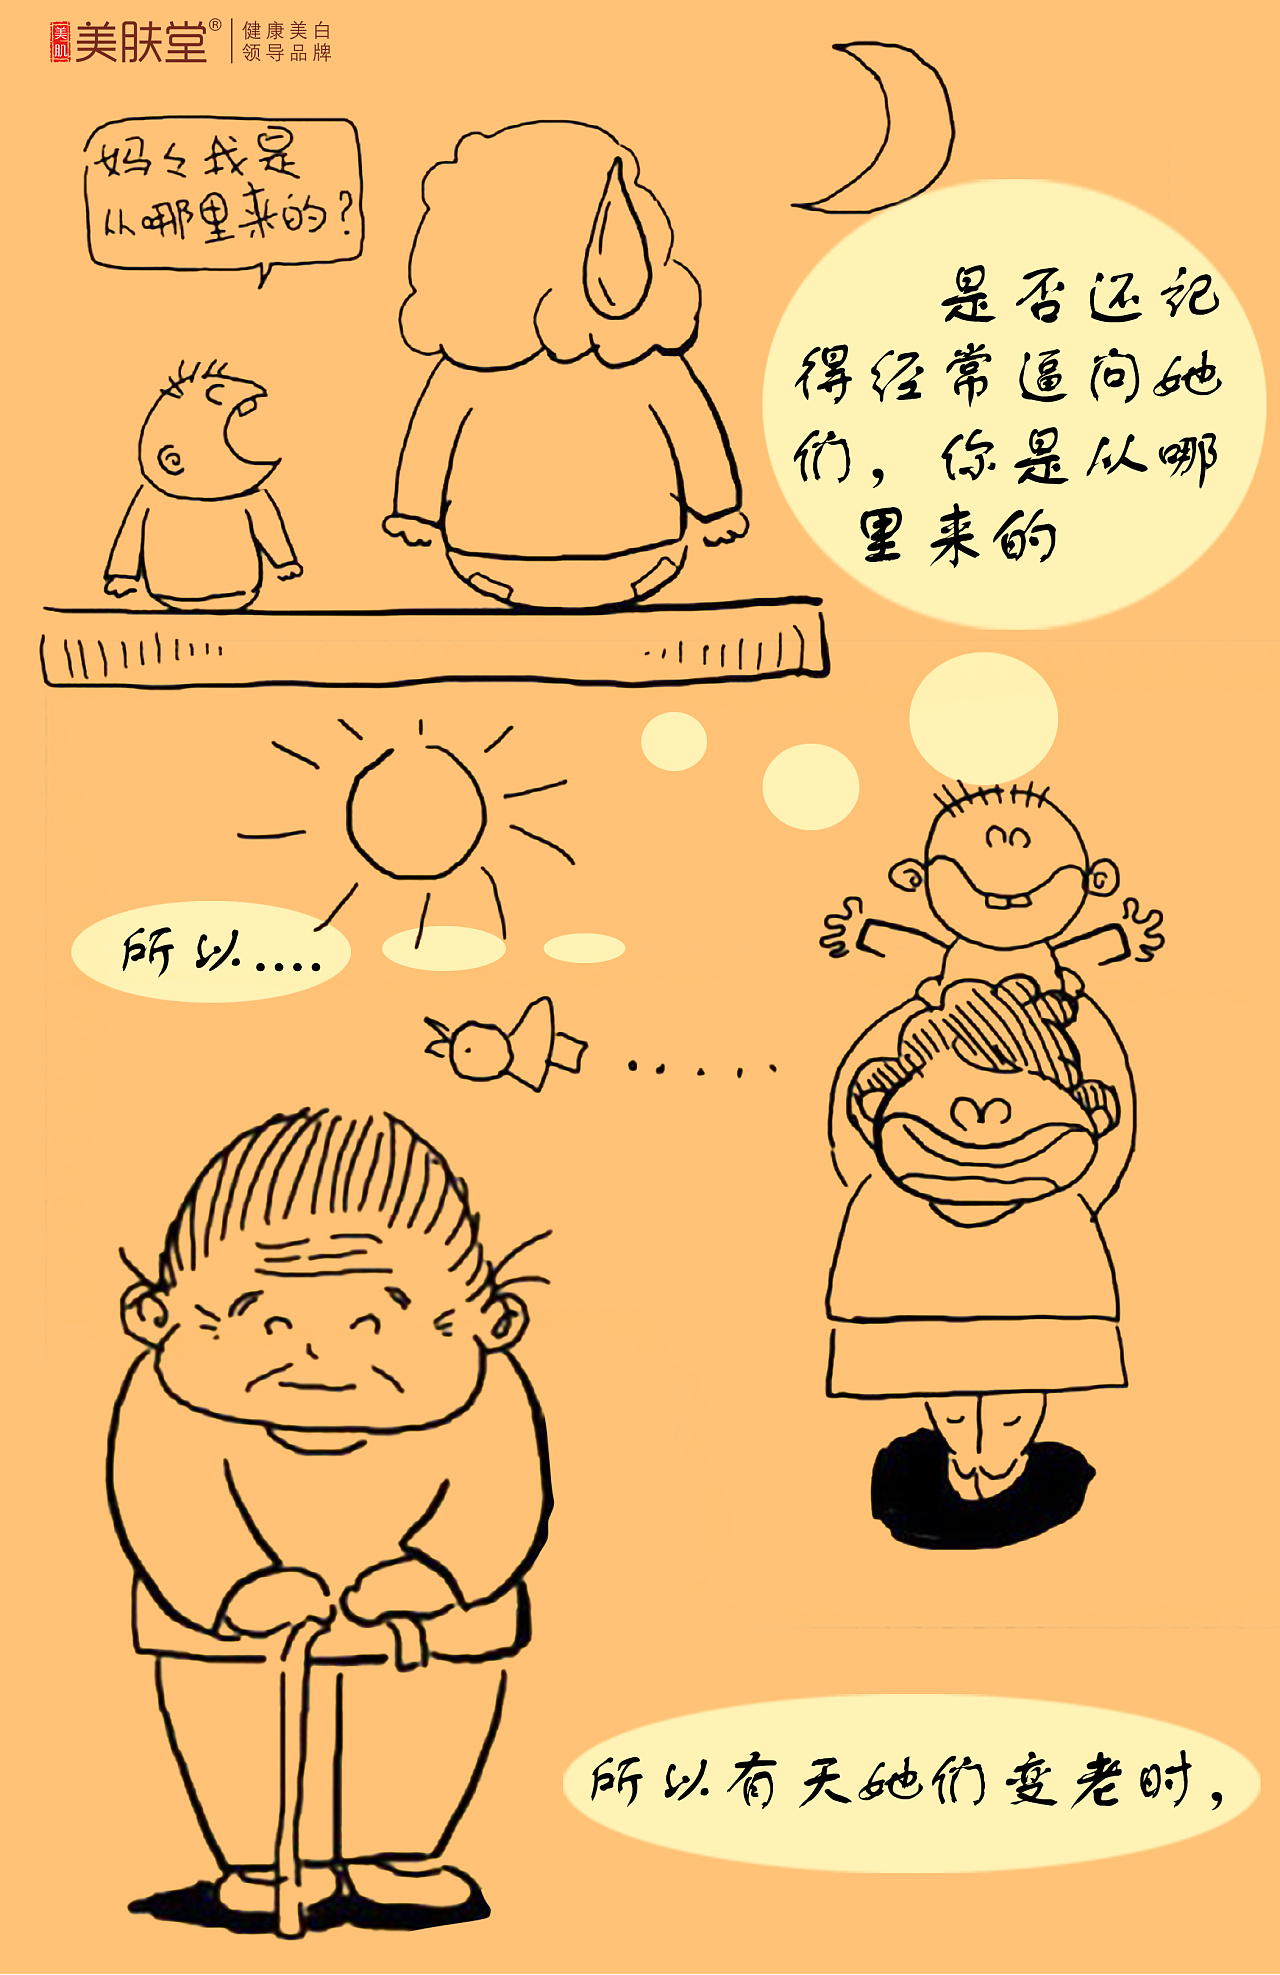 粉黄色母亲 花手绘母亲节学校宣传中文手抄报 - 模板 - Canva可画